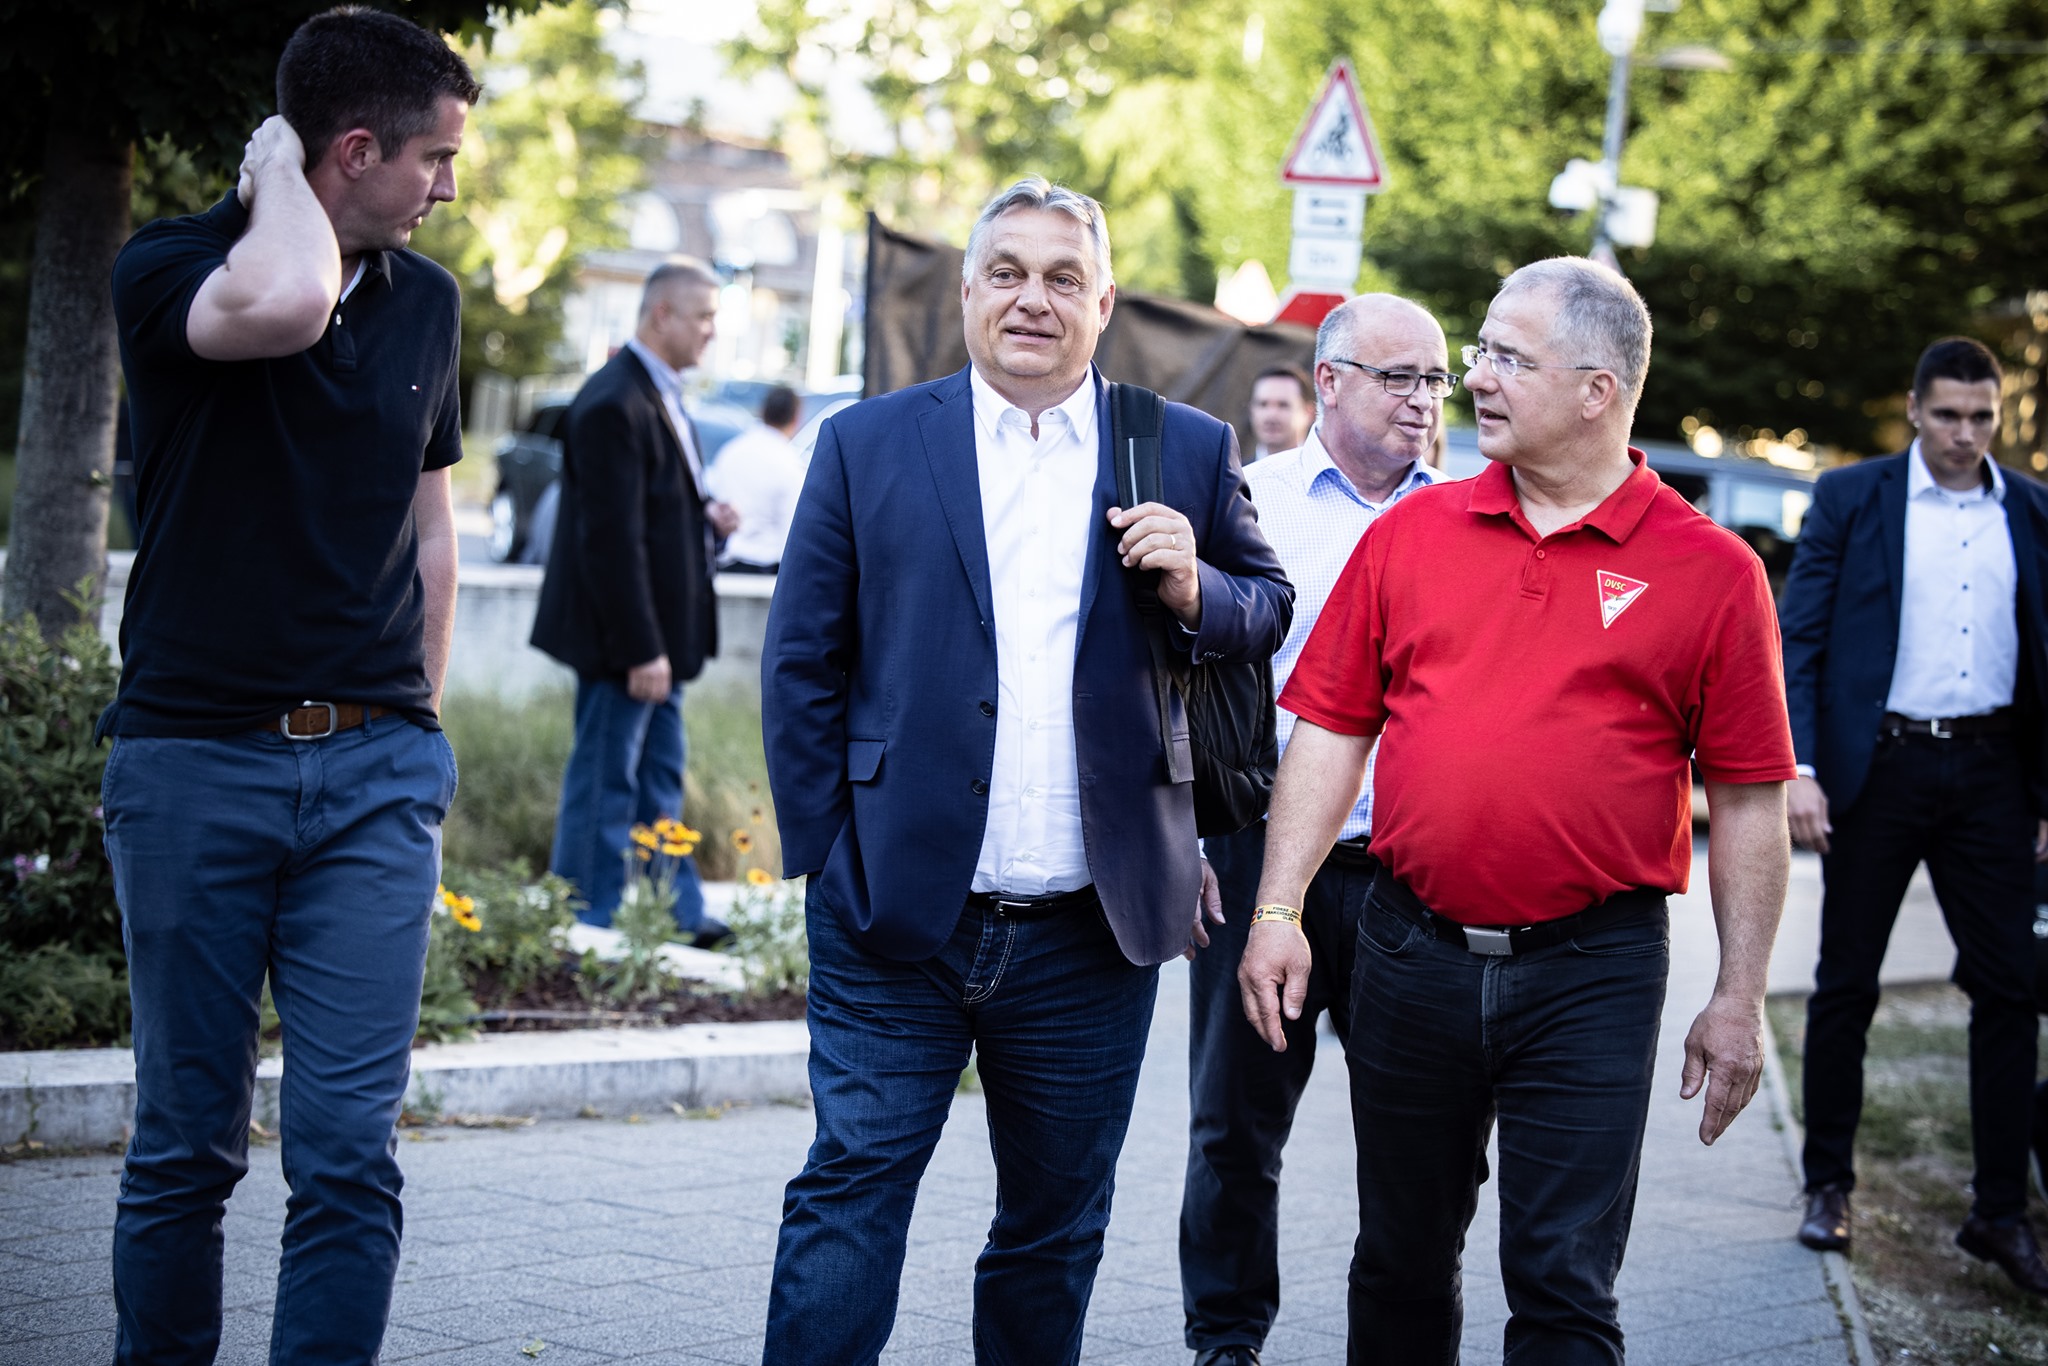 orbán walking